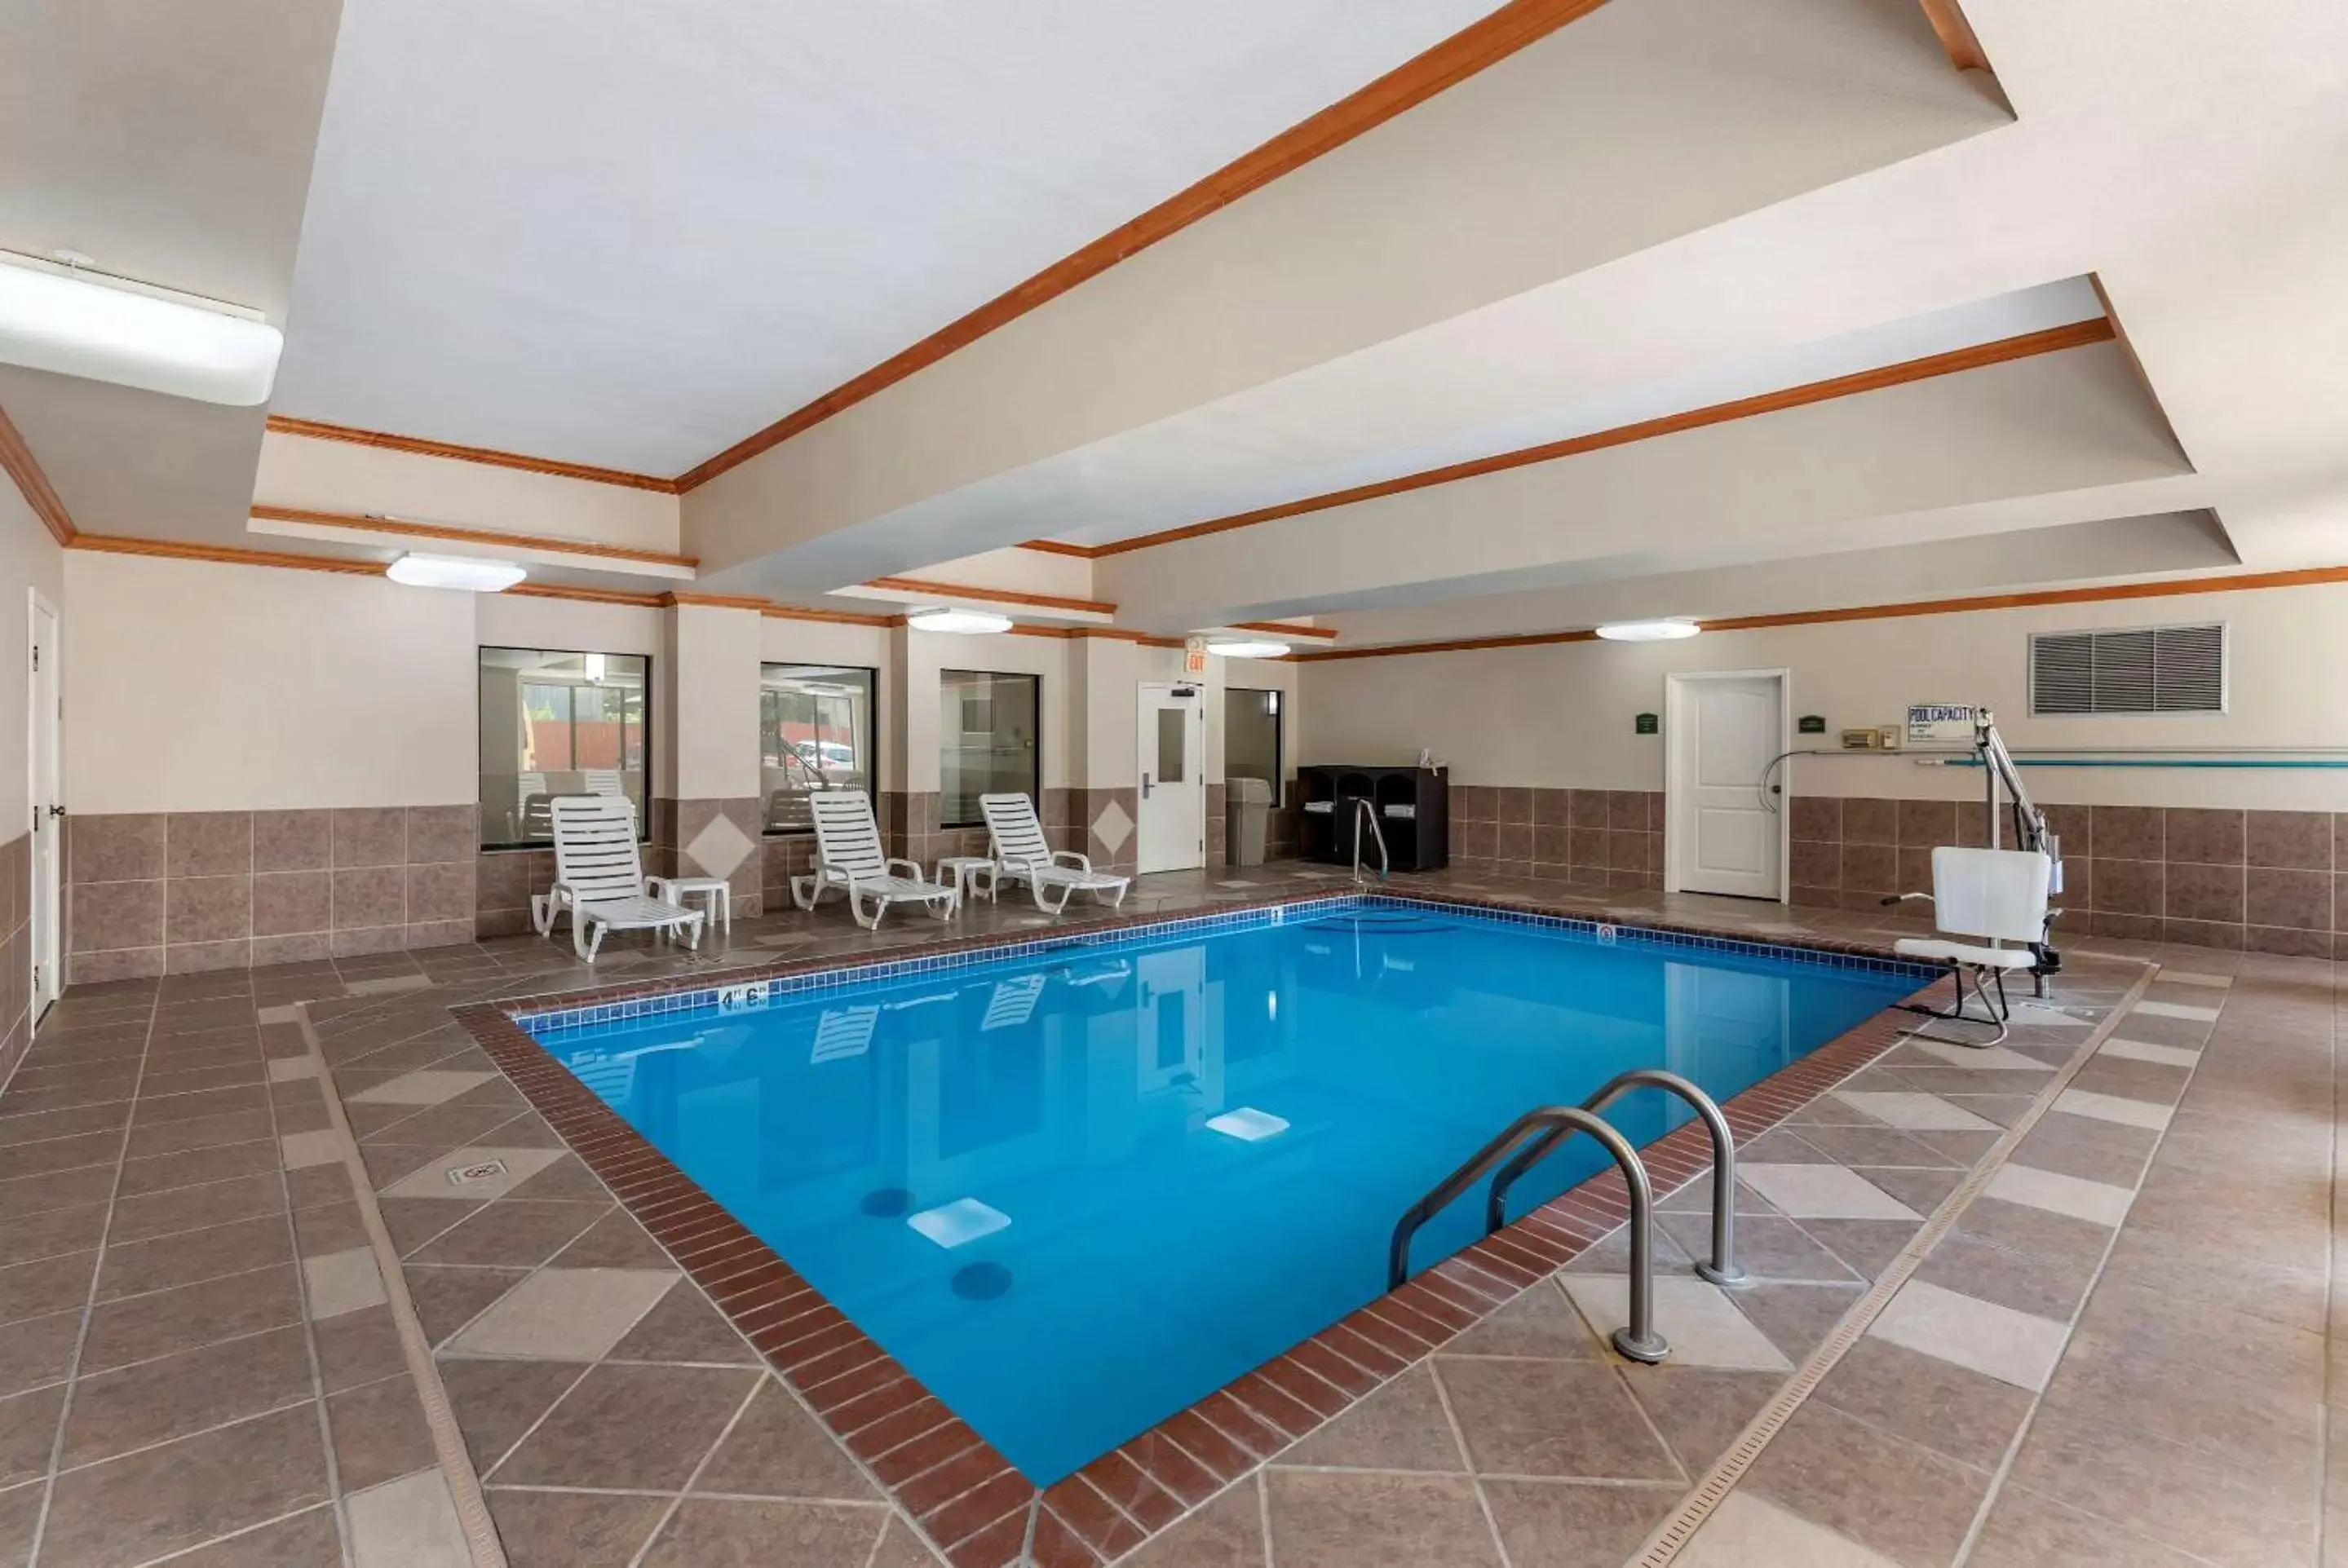 On site, Swimming Pool in Comfort Inn & Suites El Dorado